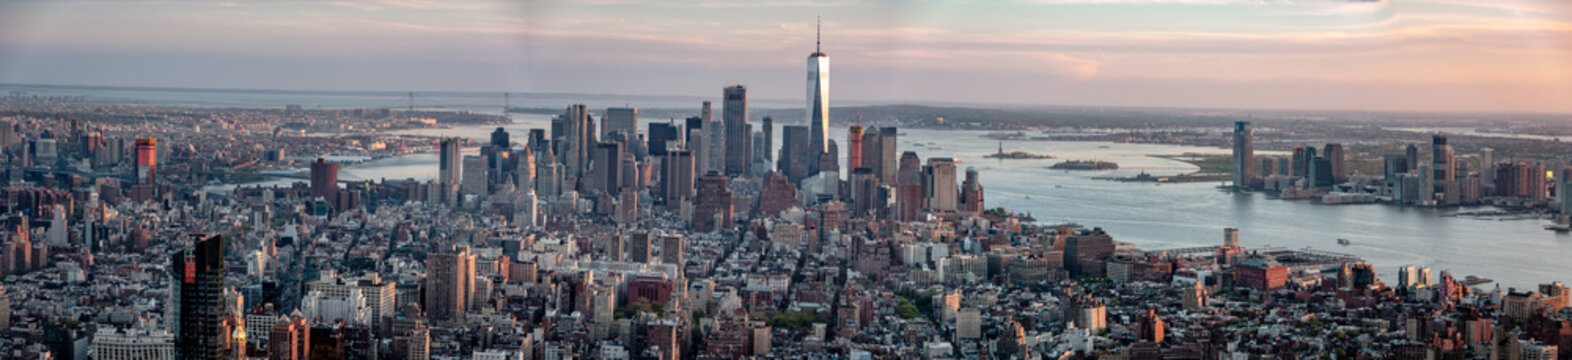 new york skyline panorama © Redfox1980